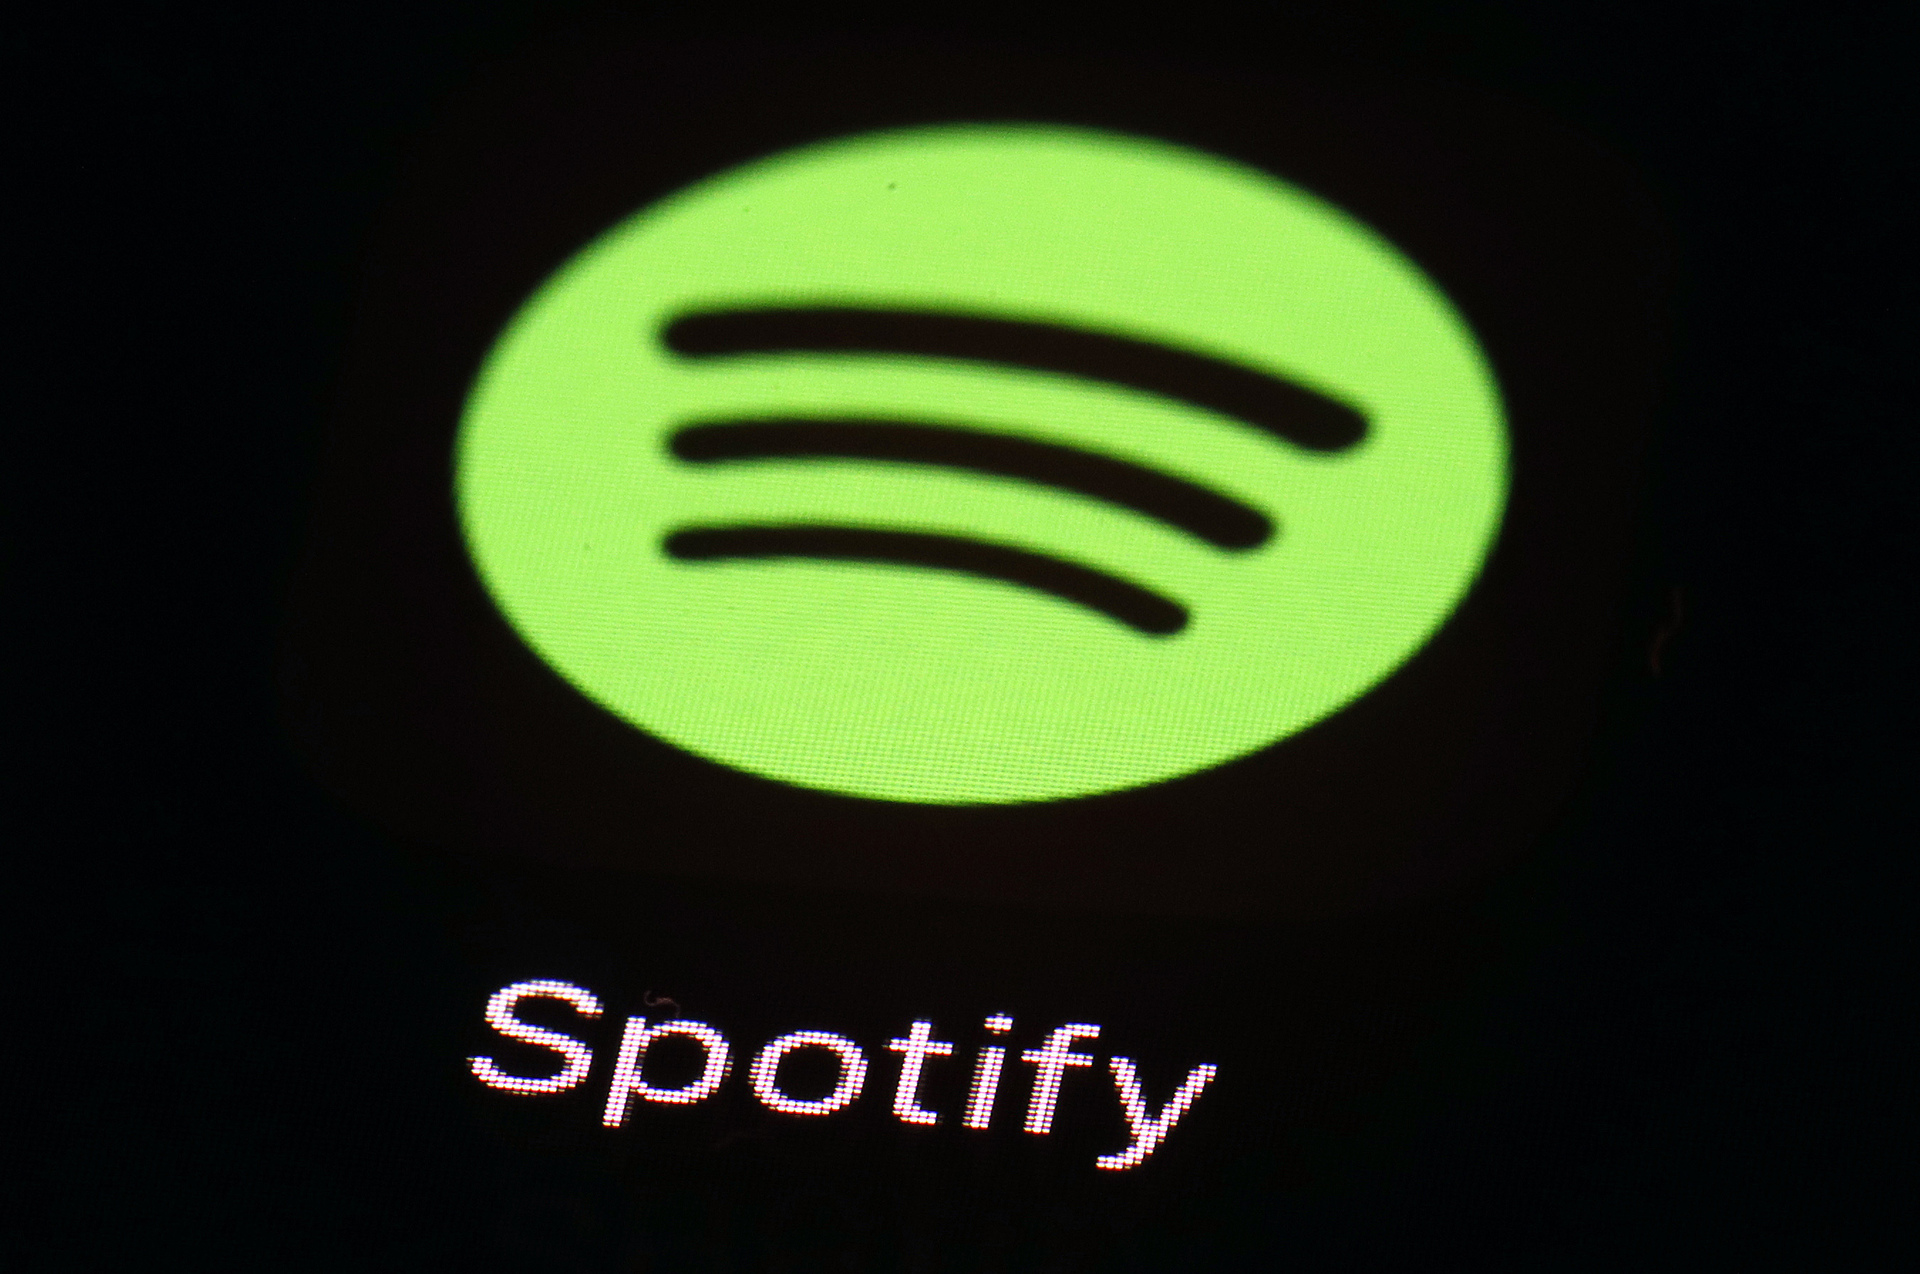 La aplicación Spotify en un iPad en Baltimore el 20 de marzo de 2018. El director financiero de Spotify, Paul Vogel, abandonará el puesto el próximo año, dijo el servicio de música por streaming el viernes 8 de diciembre de 2023, pocos días después de que la compañía anunciara su tercera ronda de despidos para 2023. (Foto AP/Patrick Semansky, archivo)